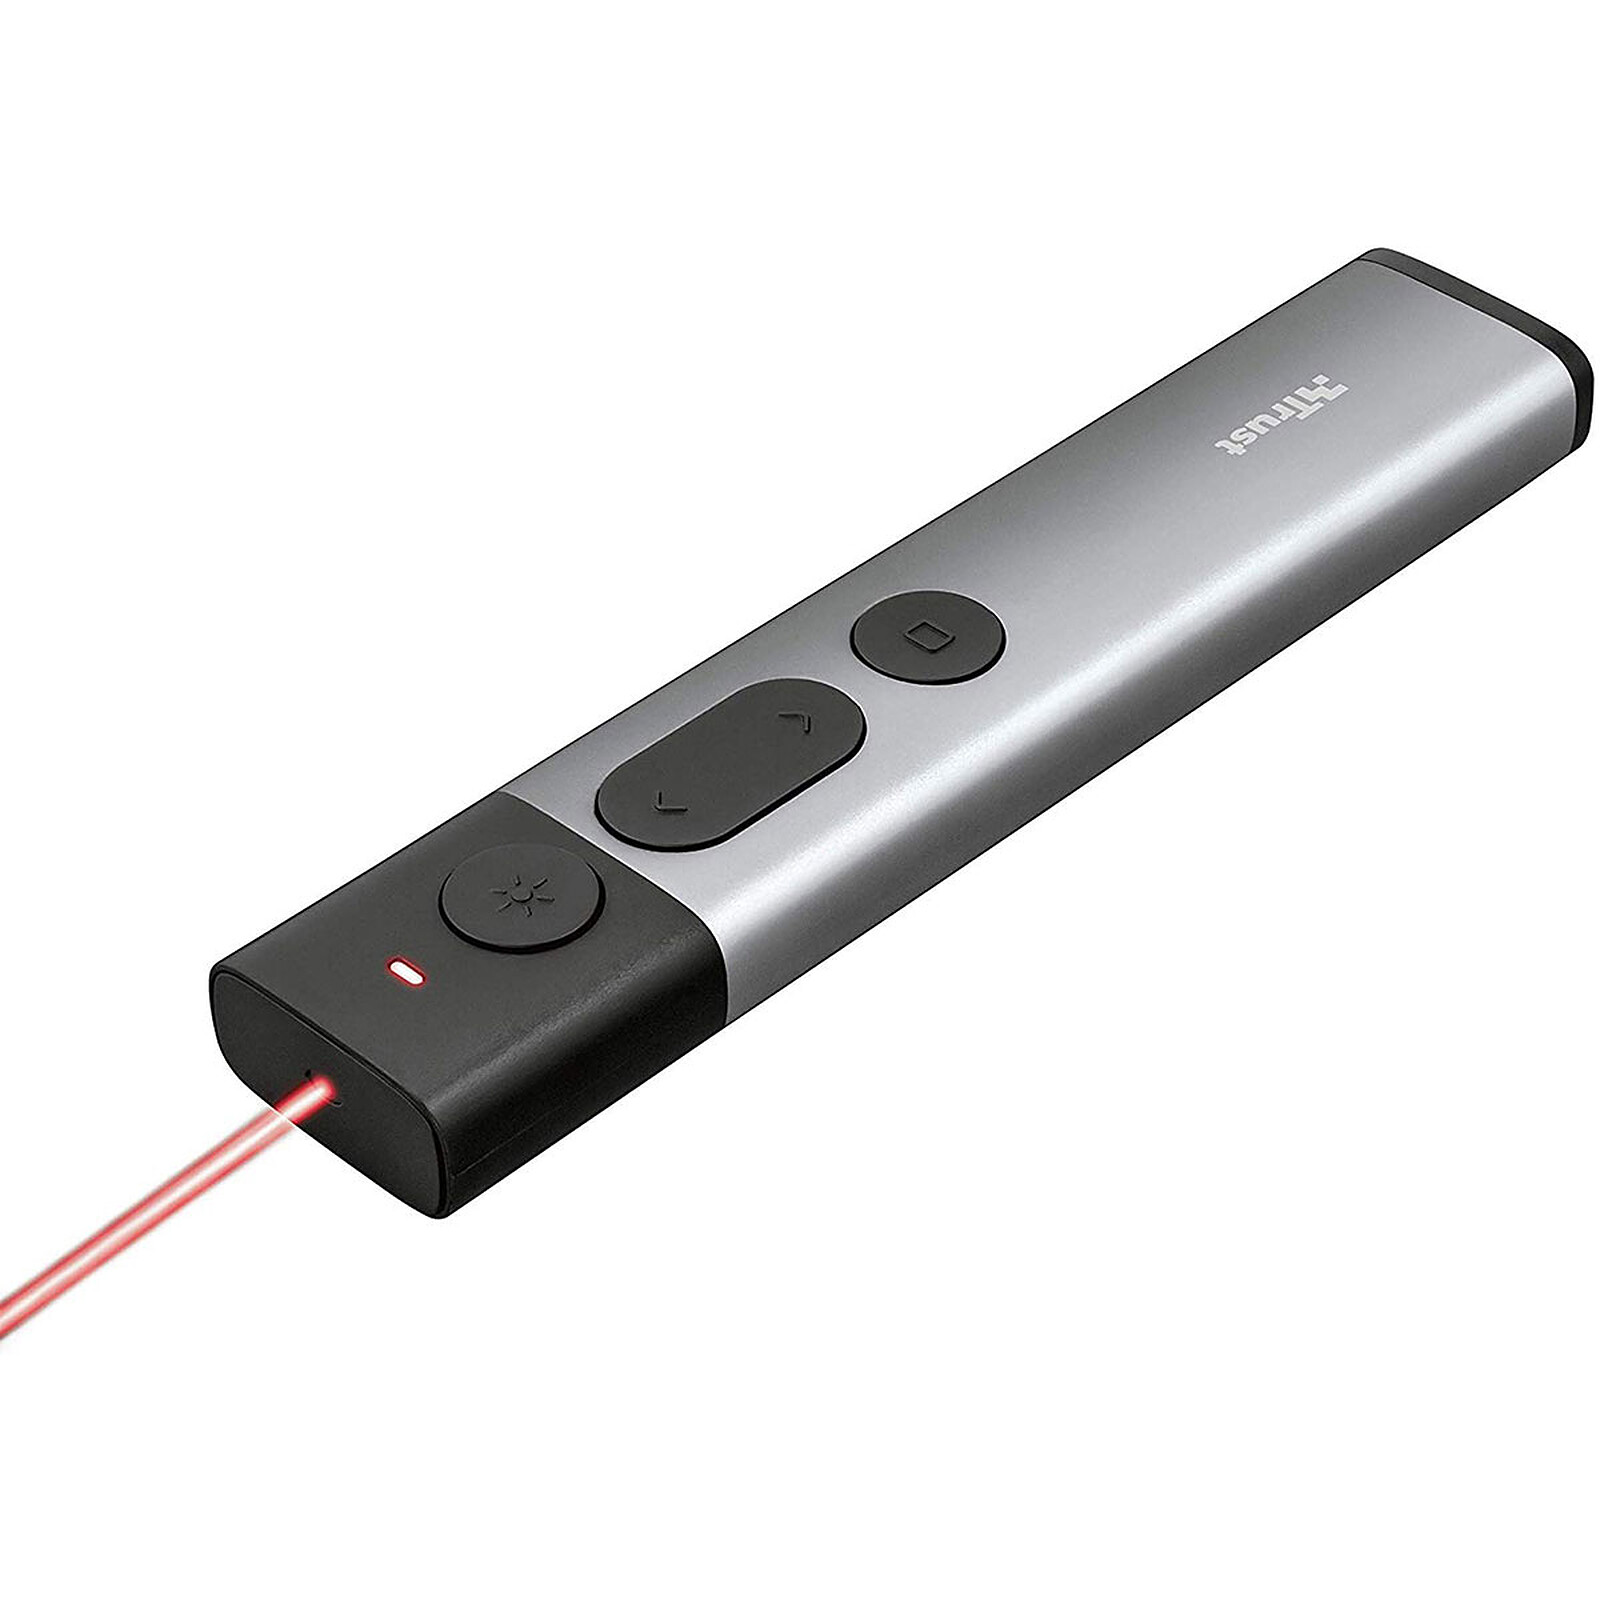 Puntatore laser wireless USB con funzioni per presentazioni